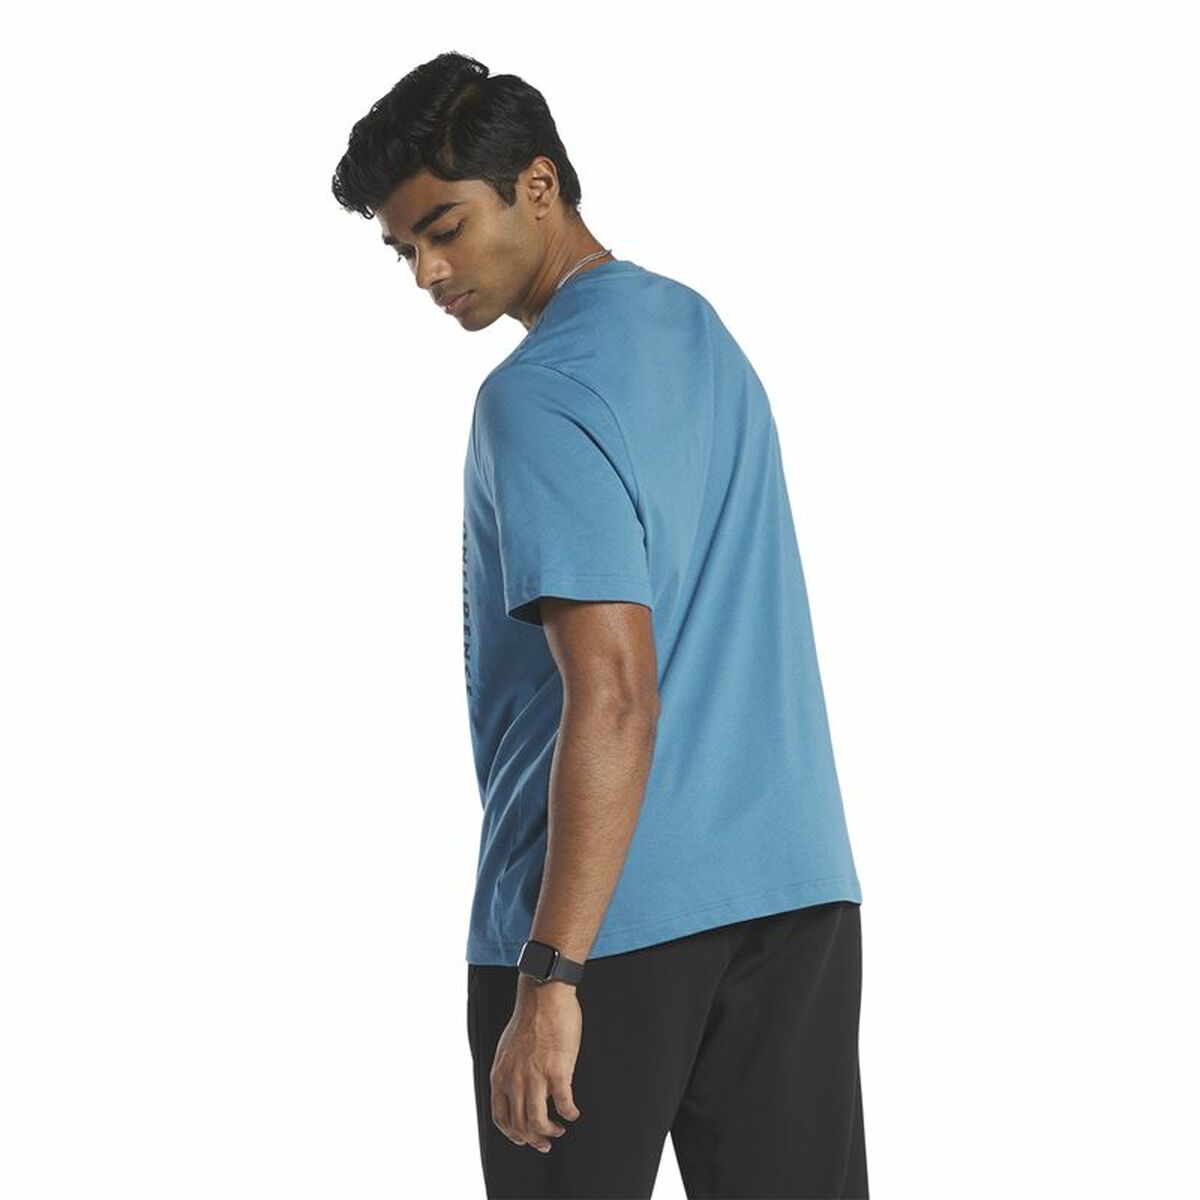 Men’s Short Sleeve T-Shirt Reebok GS Rec Center Blue